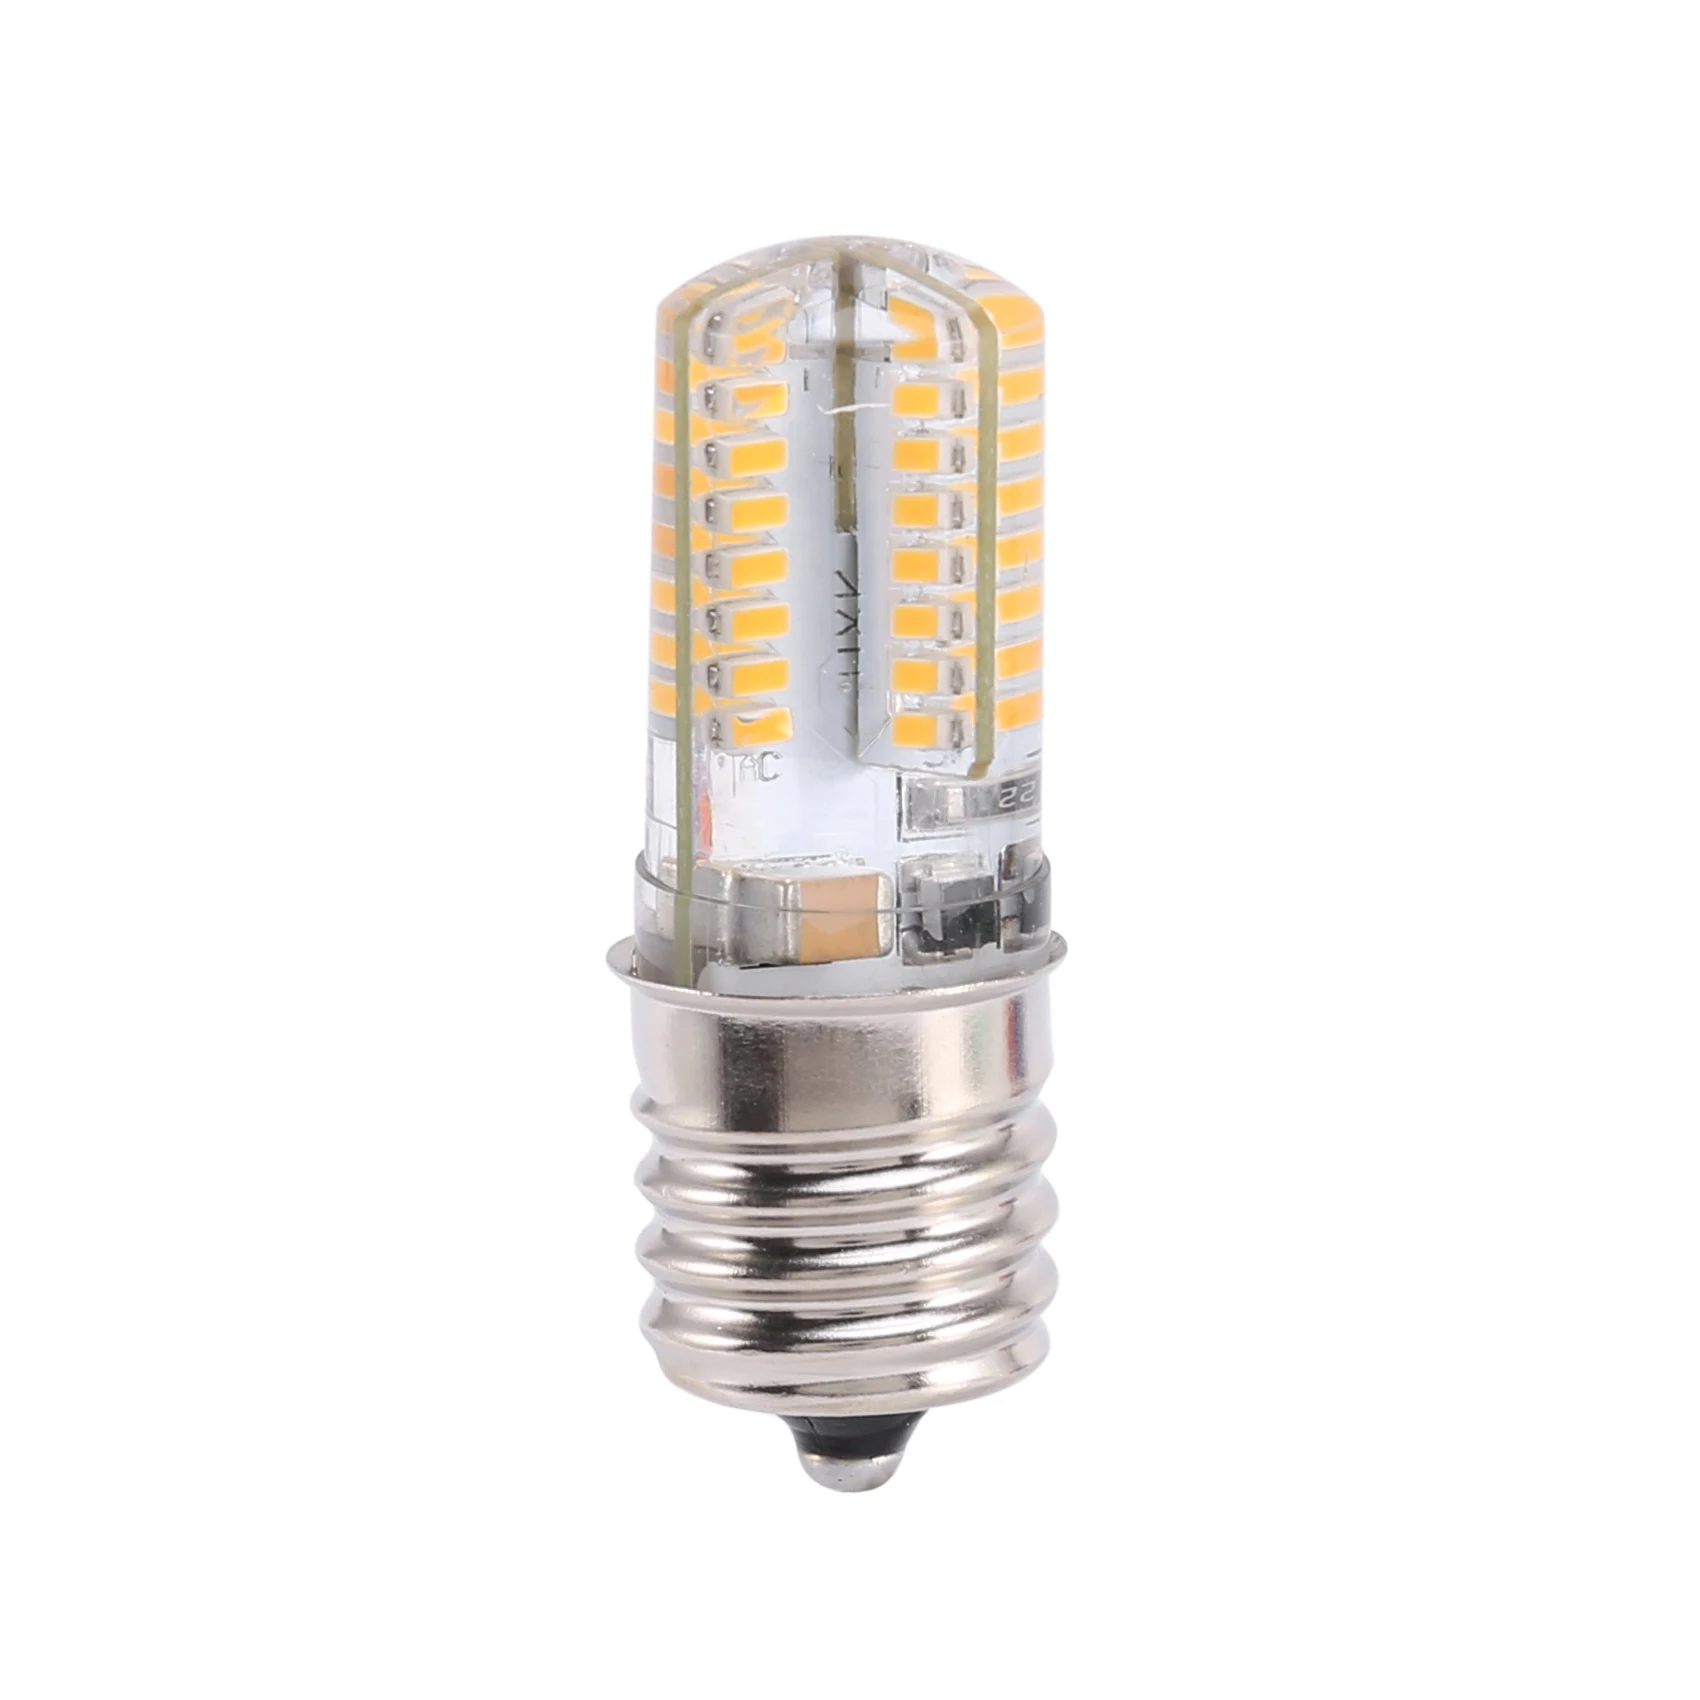 

Цоколь E17, 5 Вт, 64 лампочки, лампочка 3014 SMD, фотолампа с теплым белым светом, 110-220 В переменного тока